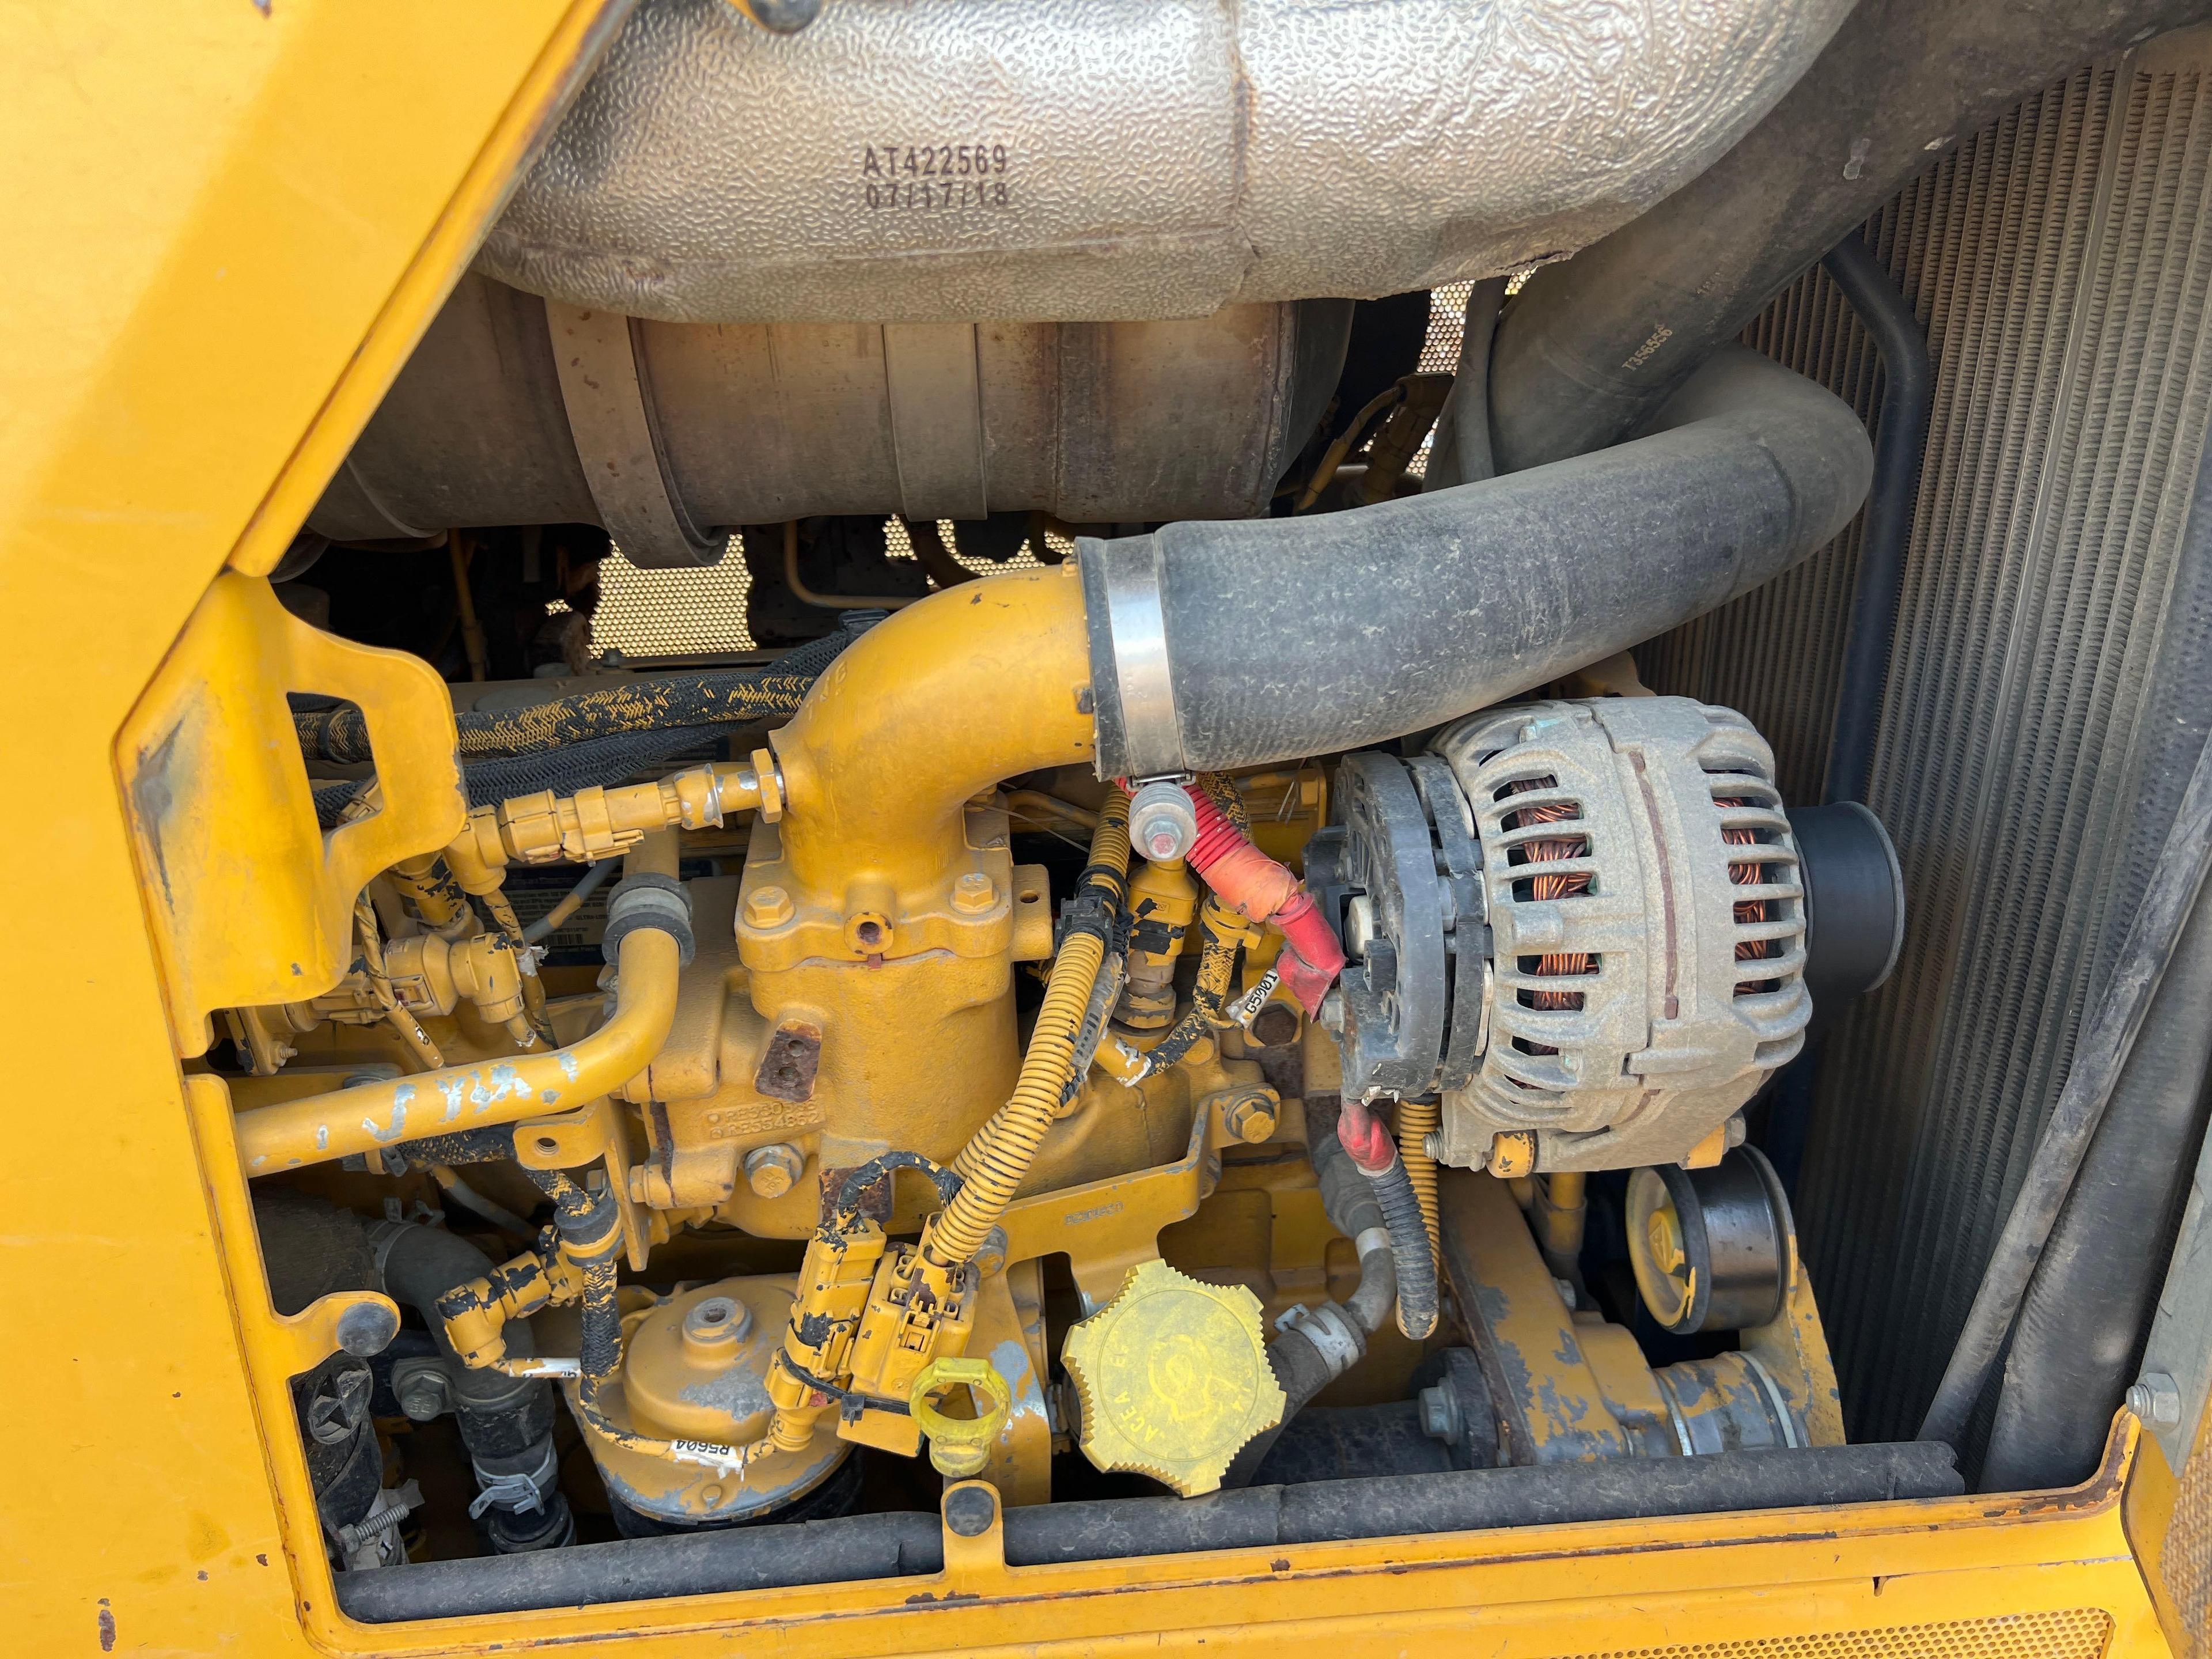 2019 JOHN DEERE 650KLGP CRAWLER TRACTOR SN:AJF339239 powered by John Deere diesel engine, equipped